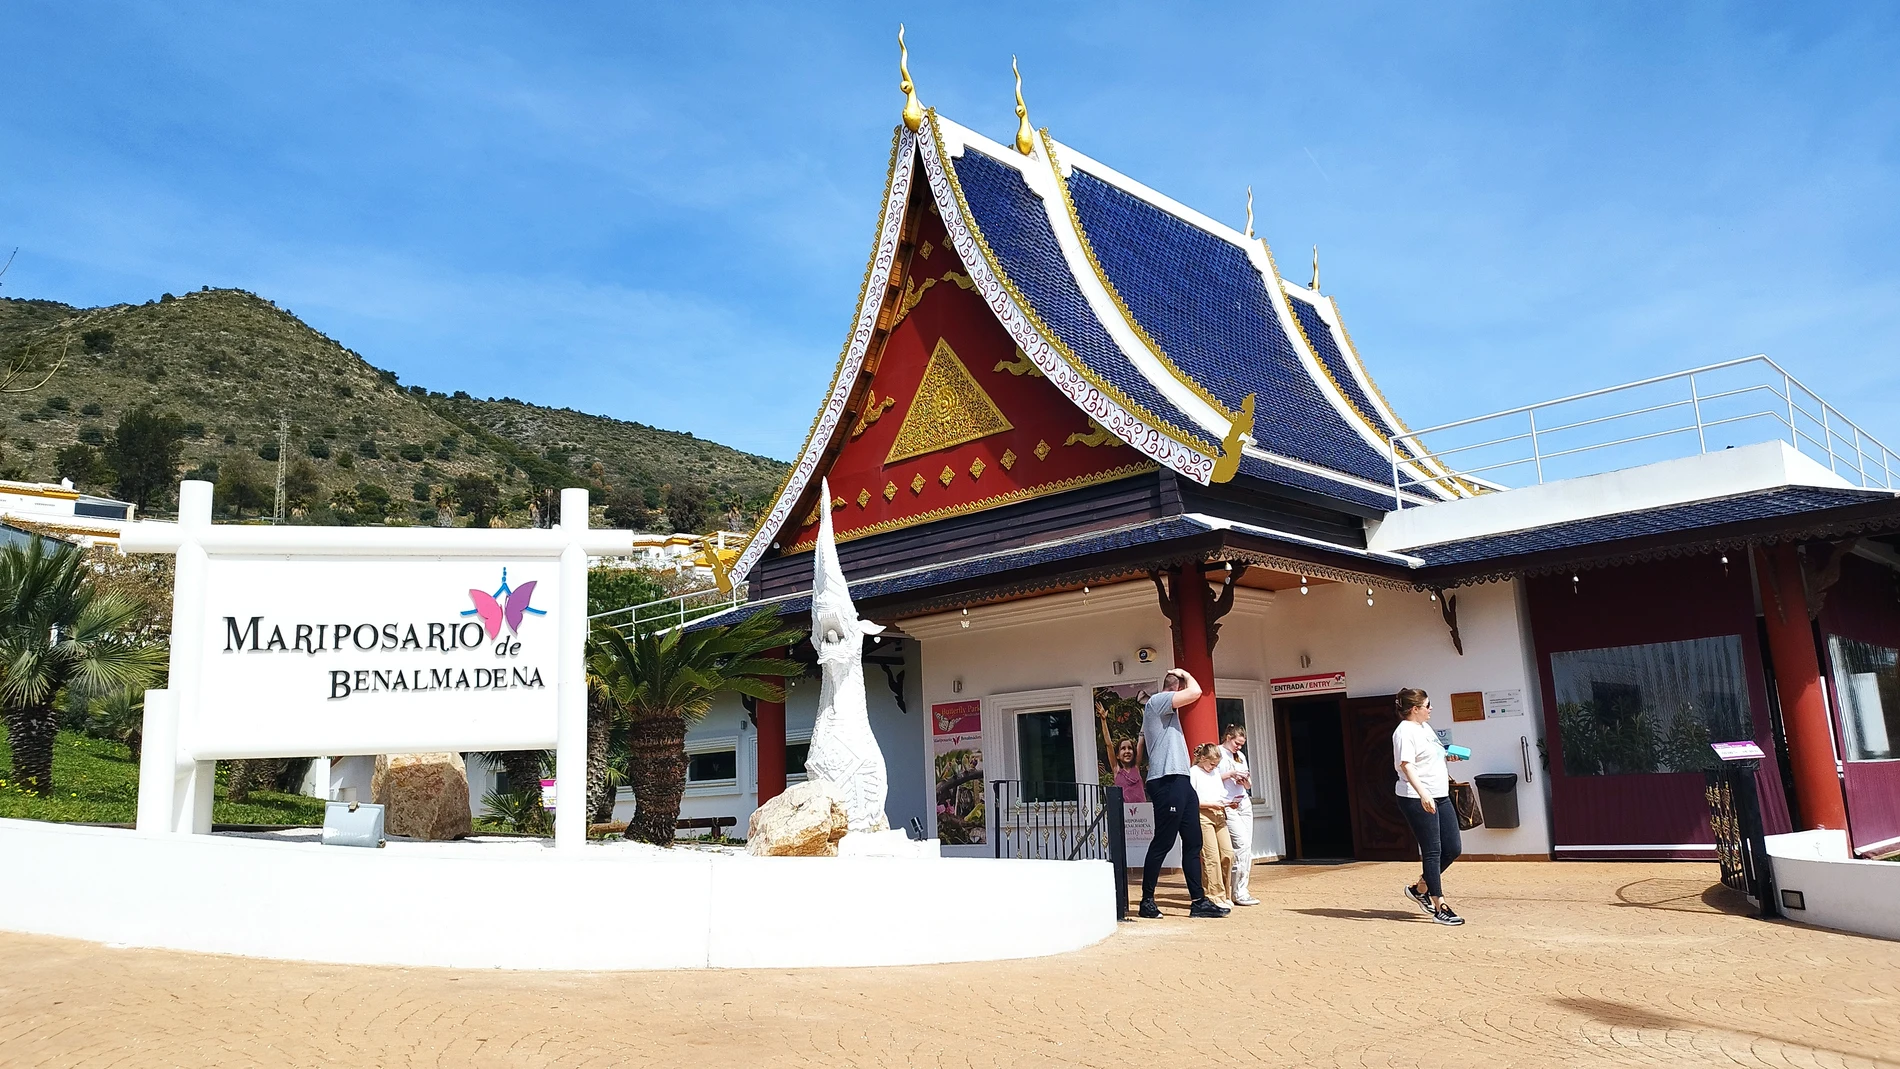 La entrada del mariposario tiene forma de templo tailandés